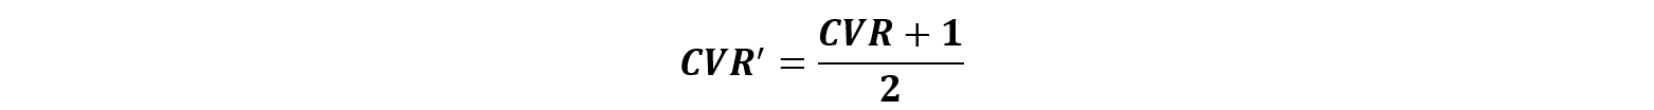 Ecuación Razón de Validez de Contenido (CVR’) Método de Lawshe Modificado por Tristán.